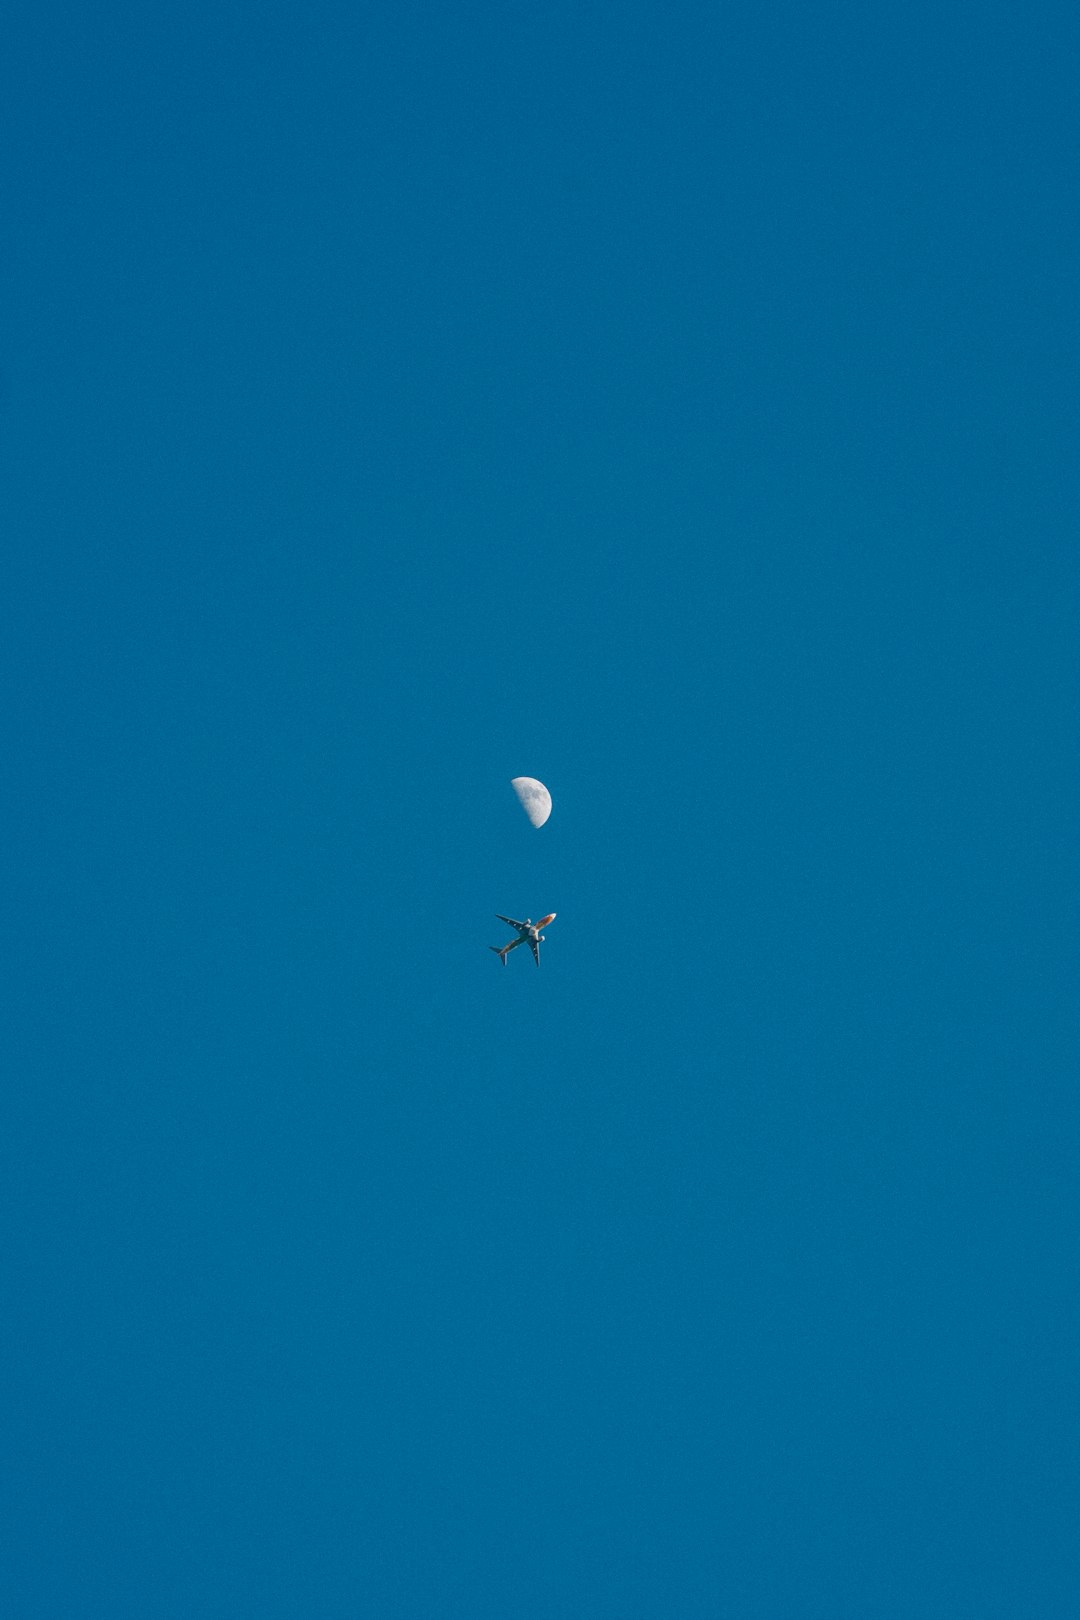 white bird flying on blue sky during daytime